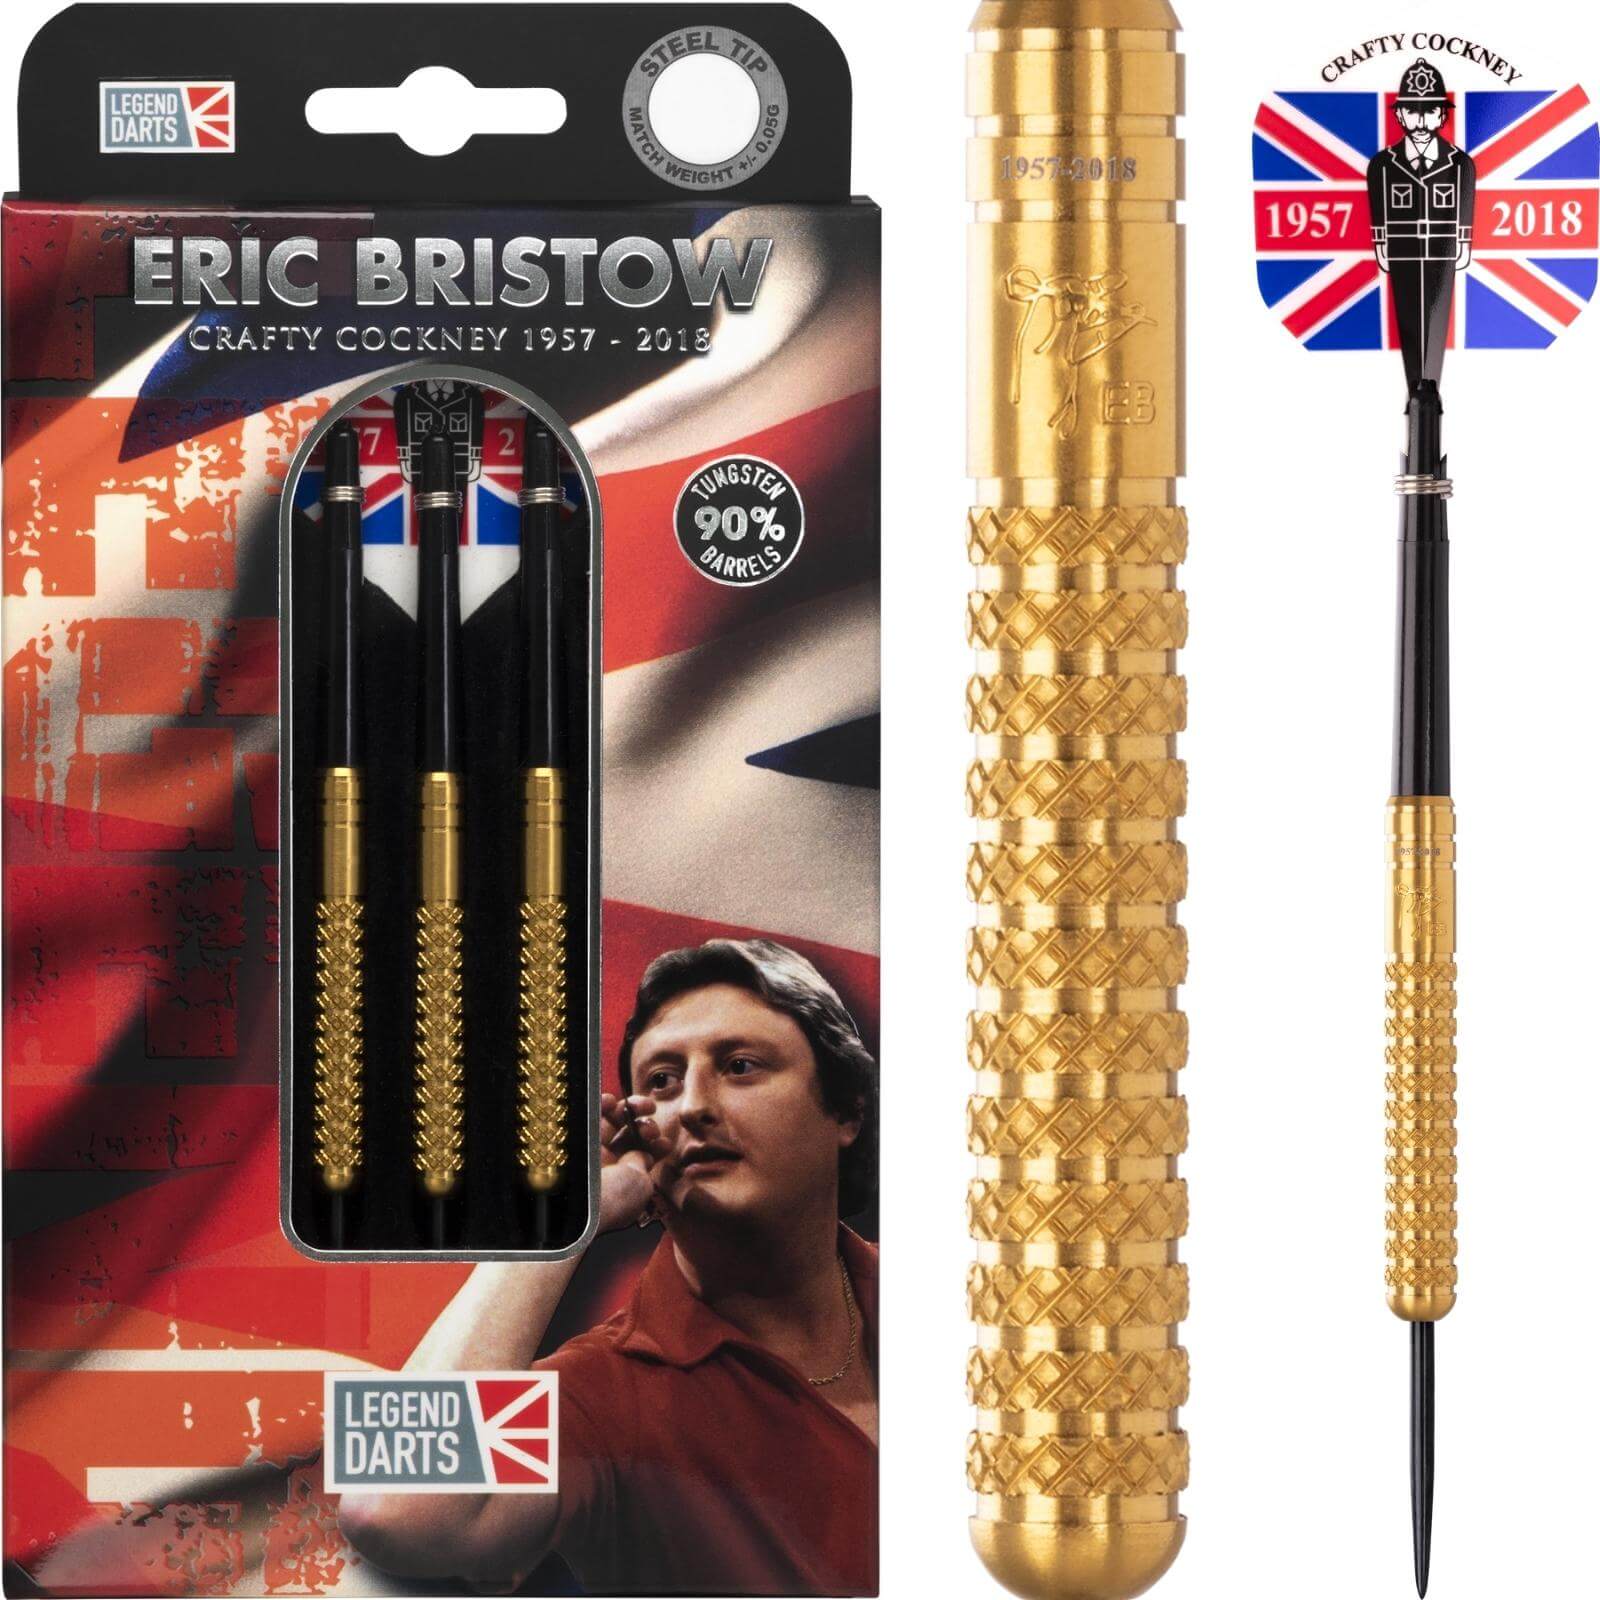 Darts - Legend Darts - Eric Bristow Gold Knurled Darts - Steel Tip - 90% Tungsten - 21g 23g 25g 